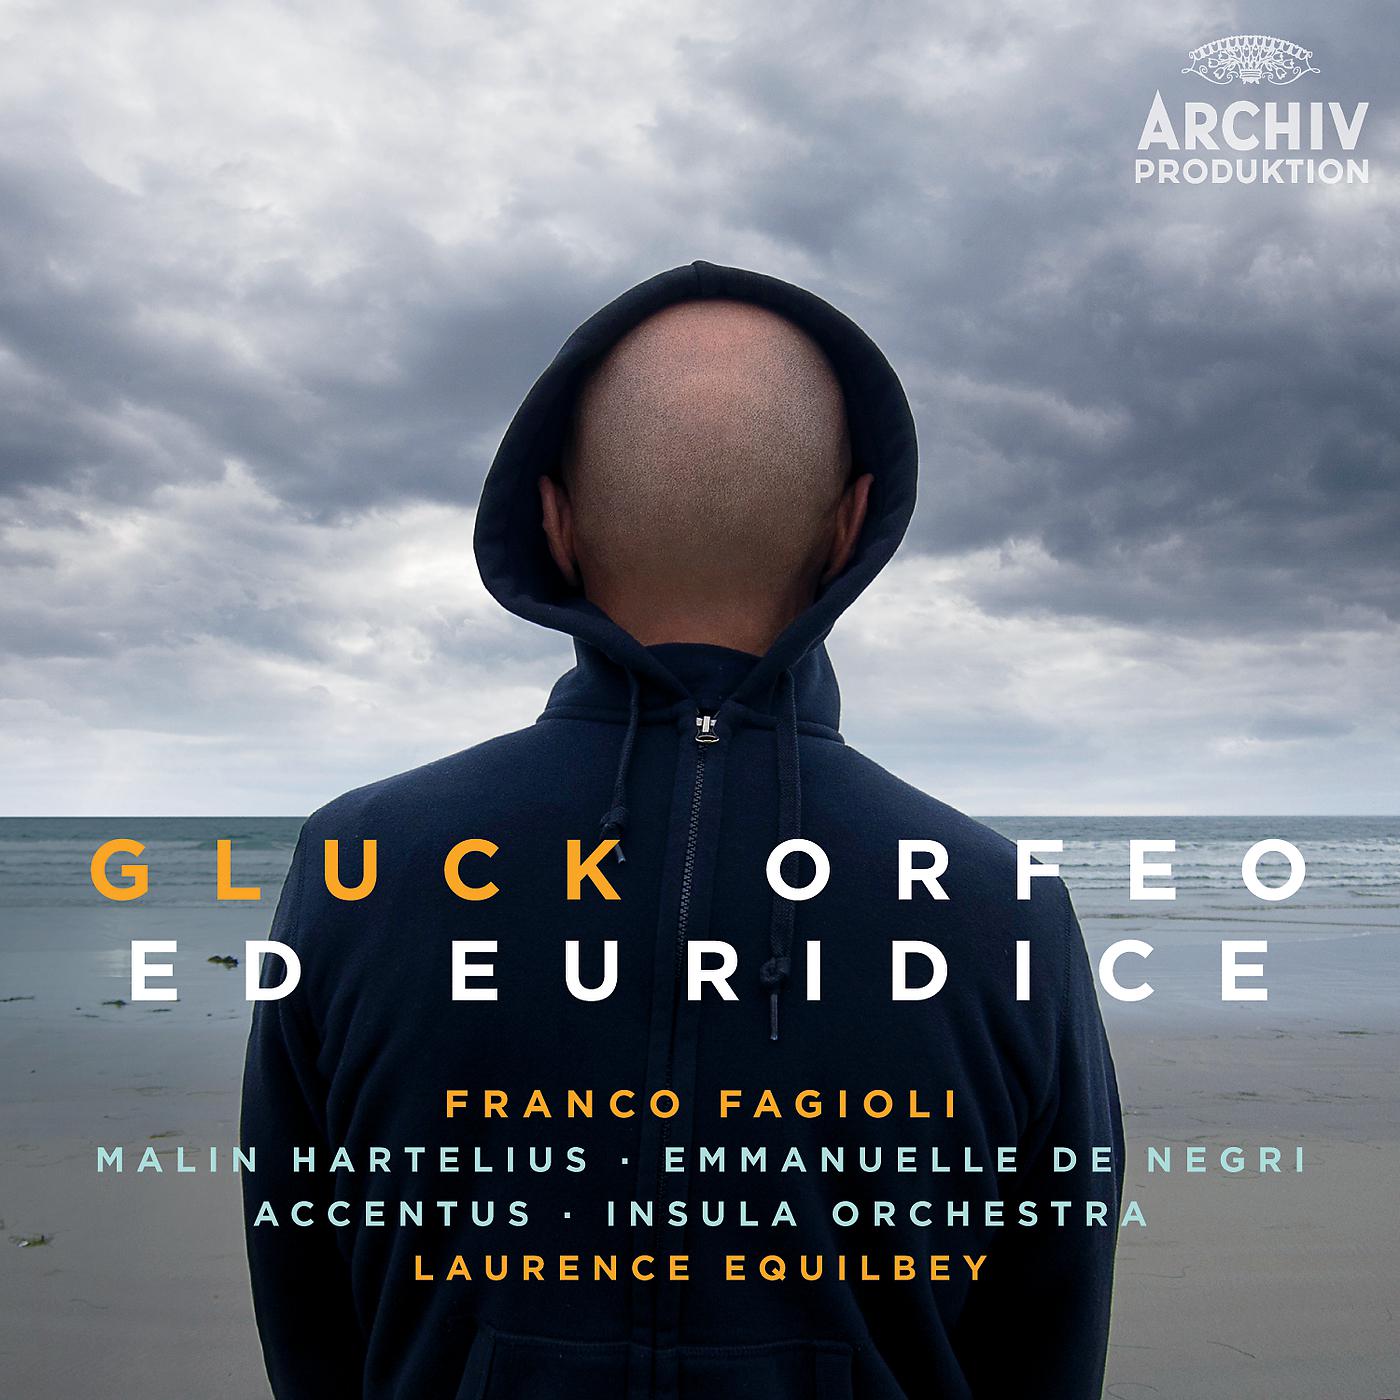 Постер альбома Gluck: Orfeo ed Euridice